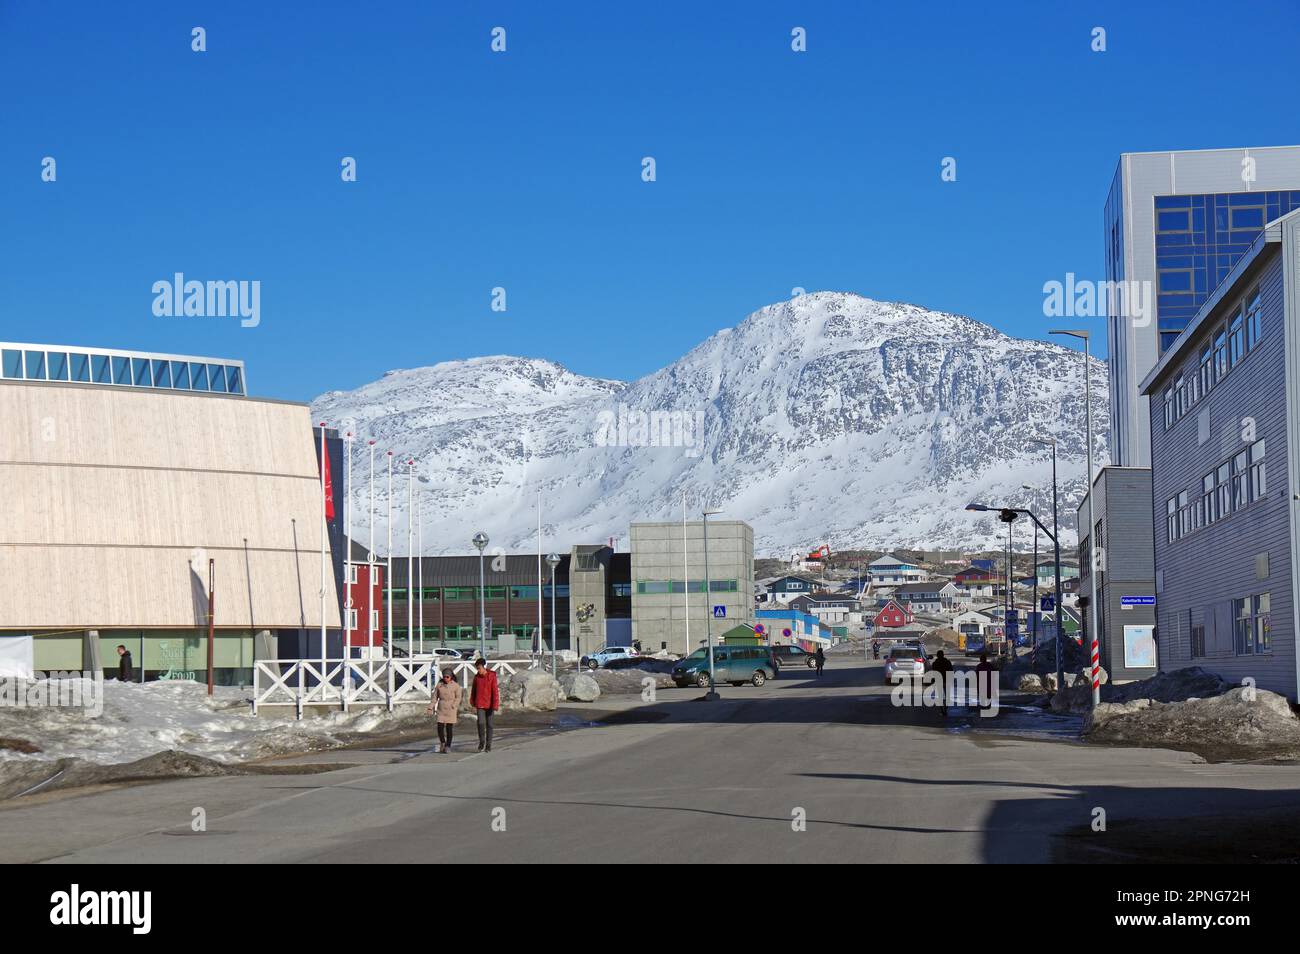 Rue principale avec boutiques et grands bâtiments dans la capitale Greenlandic Nuuk, Groenland, Danemark Banque D'Images